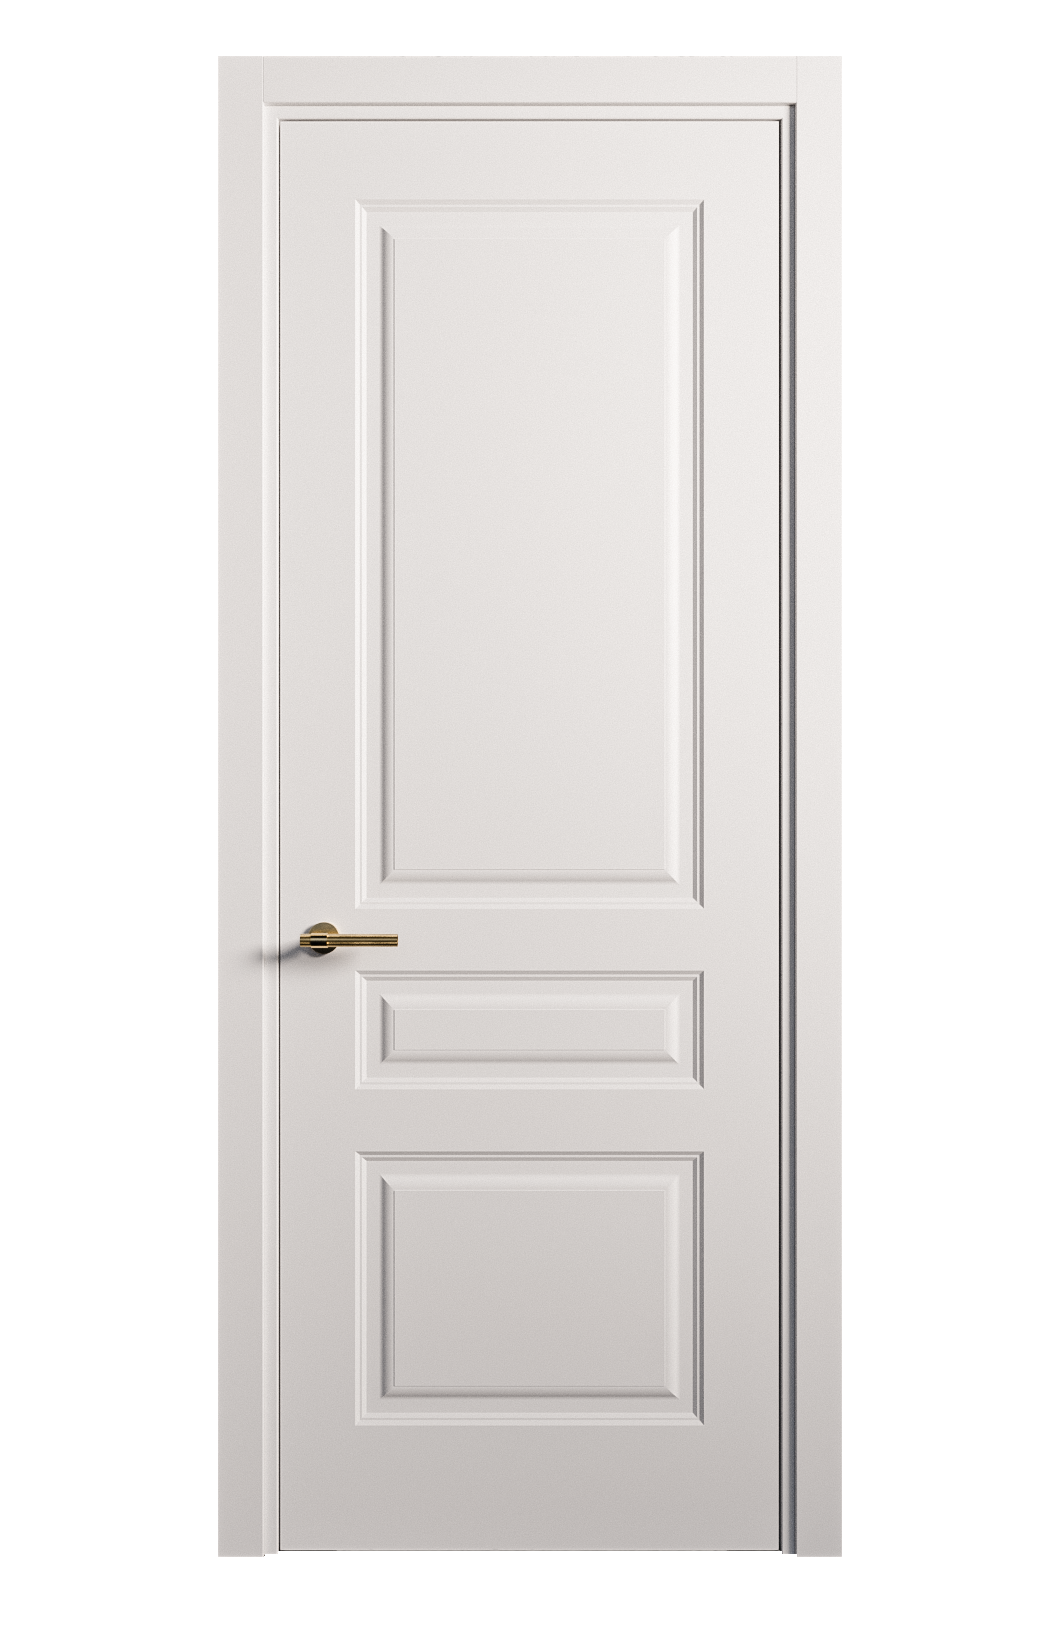 Межкомнатная дверь Вита-2 глухая эмаль ral 9003 26402